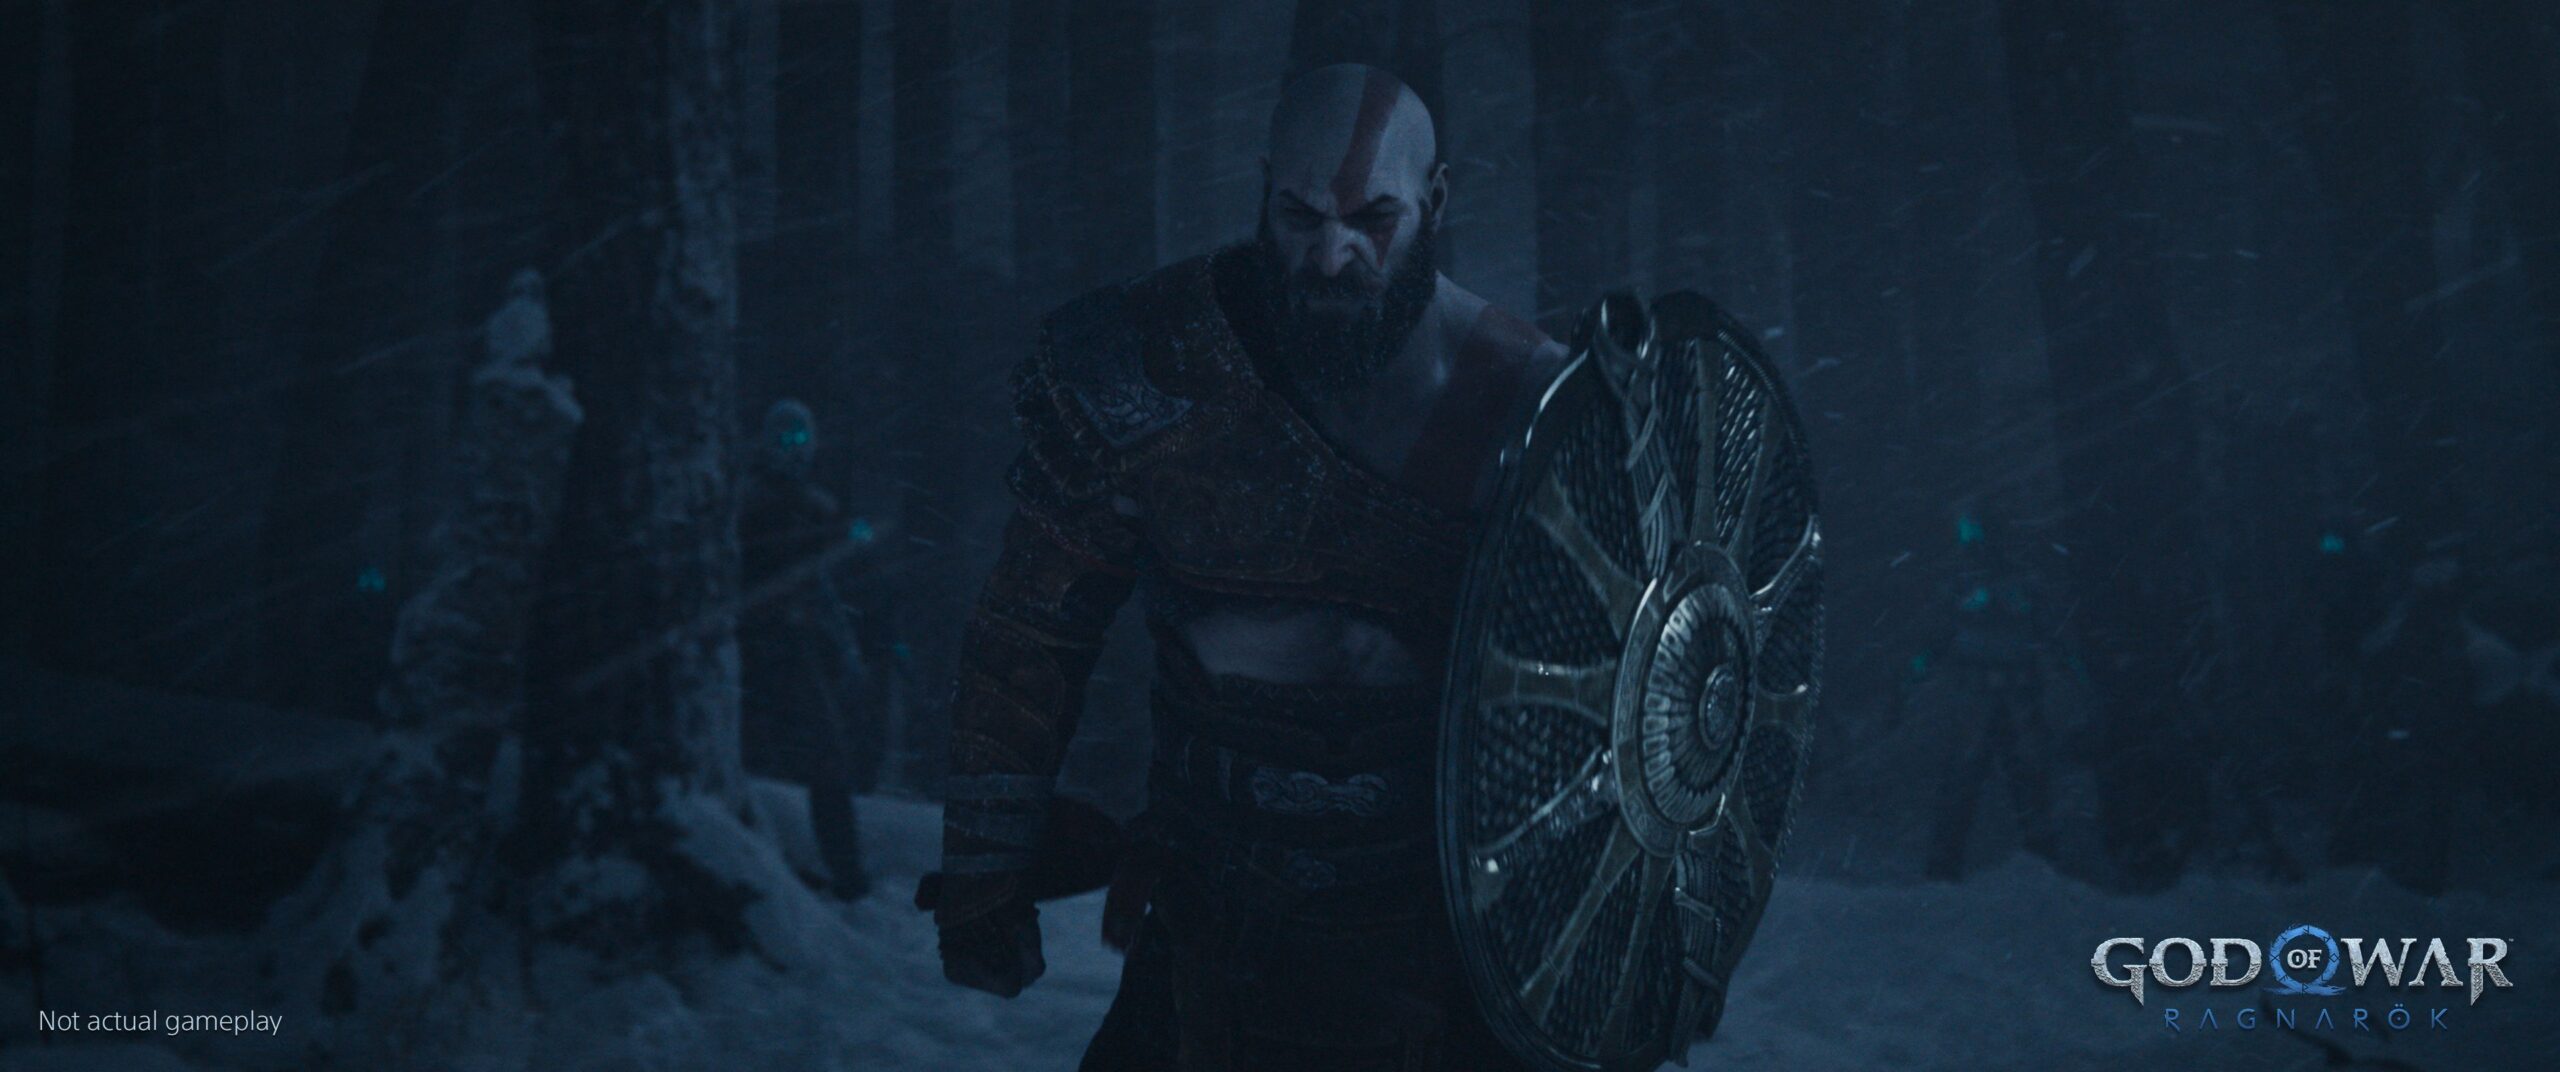 Agora sim! God of War Ragnarök ganha data de lançamento oficial!